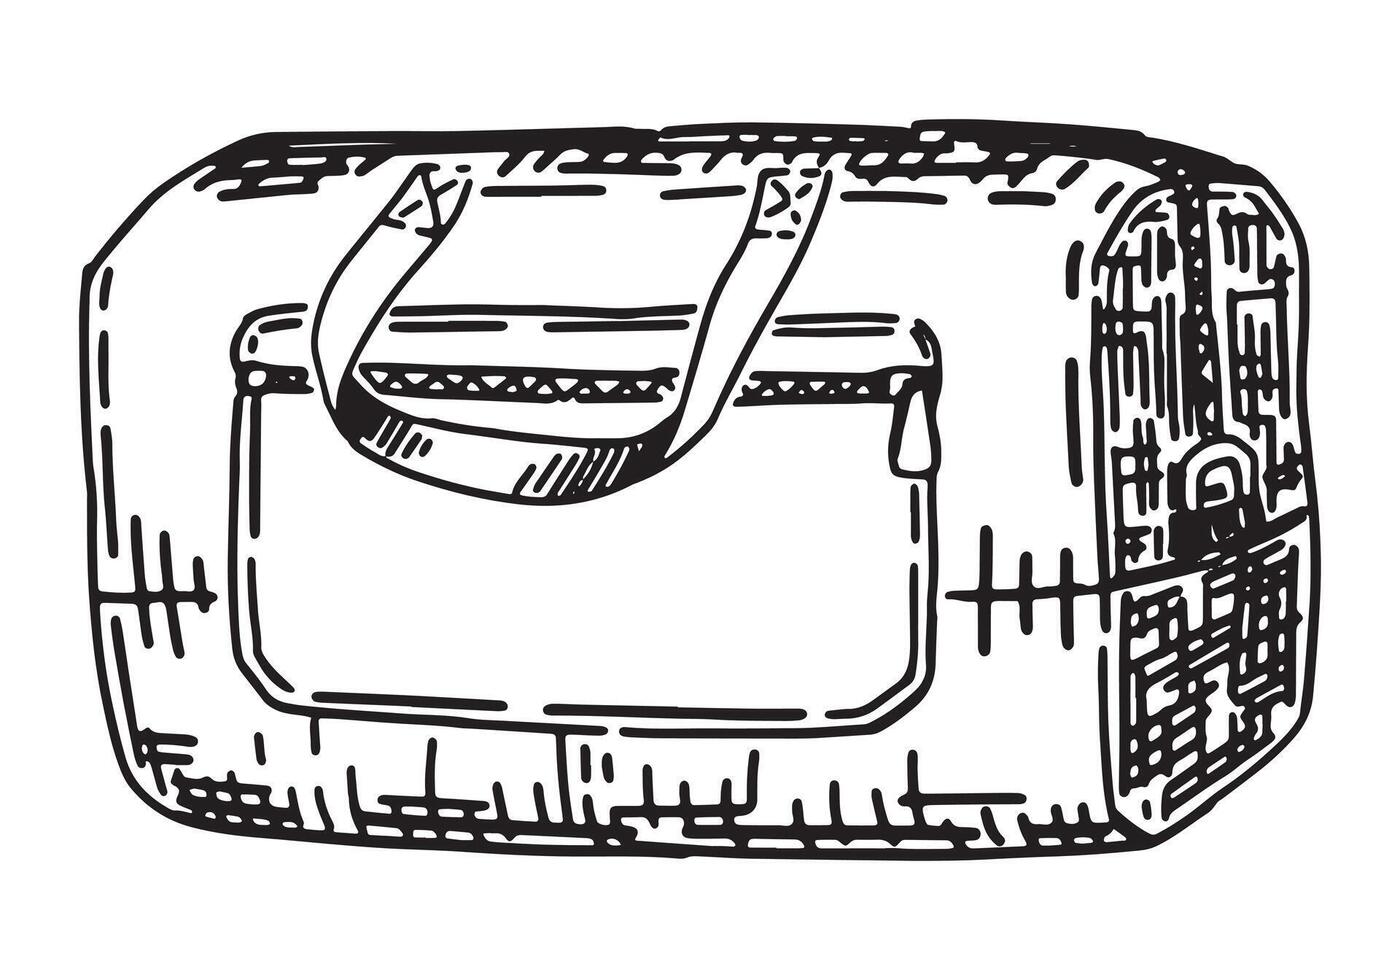 viaje deporte bolso bosquejo. clipart de equipaje, viaje atributo. mano dibujado vector ilustración aislado en blanco.